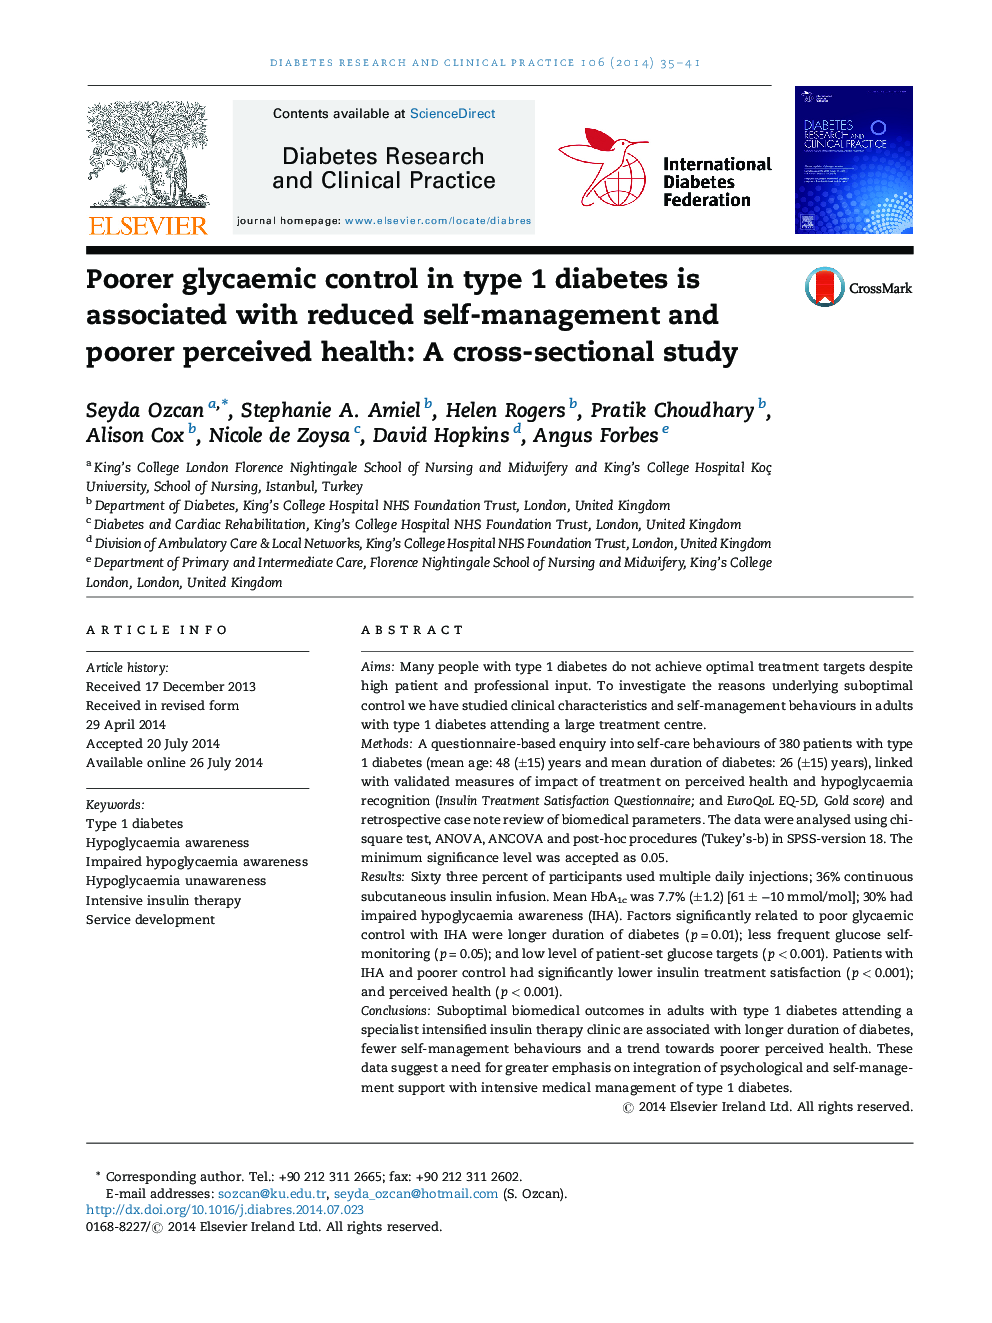 کنترل ضعیف گلیکوزمی در دیابت نوع 1 با کاهش خودمراقبت و سلامت درک شده ضعیف همراه است: یک مطالعه مقطعی 